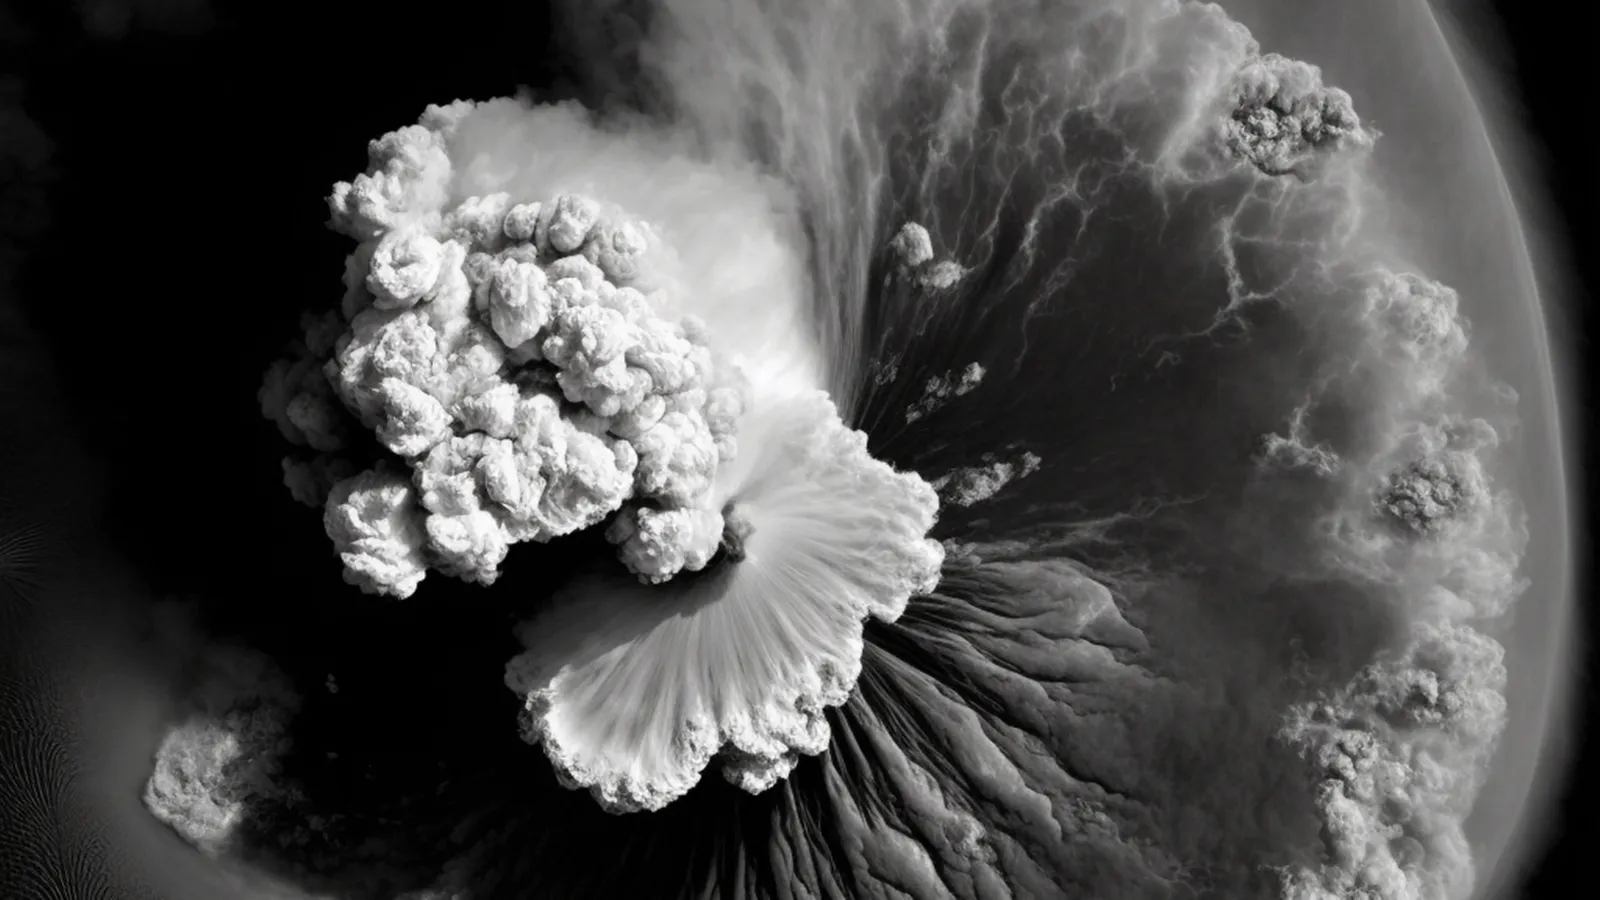 Συνέβη μόλις πέρσι και δεν το κατάλαβε κανείς: Η πιο μεγάλη έκρηξη ηφαιστείου και ένα τσουνάμι 45 μέτρων «έσκισαν» τη γη